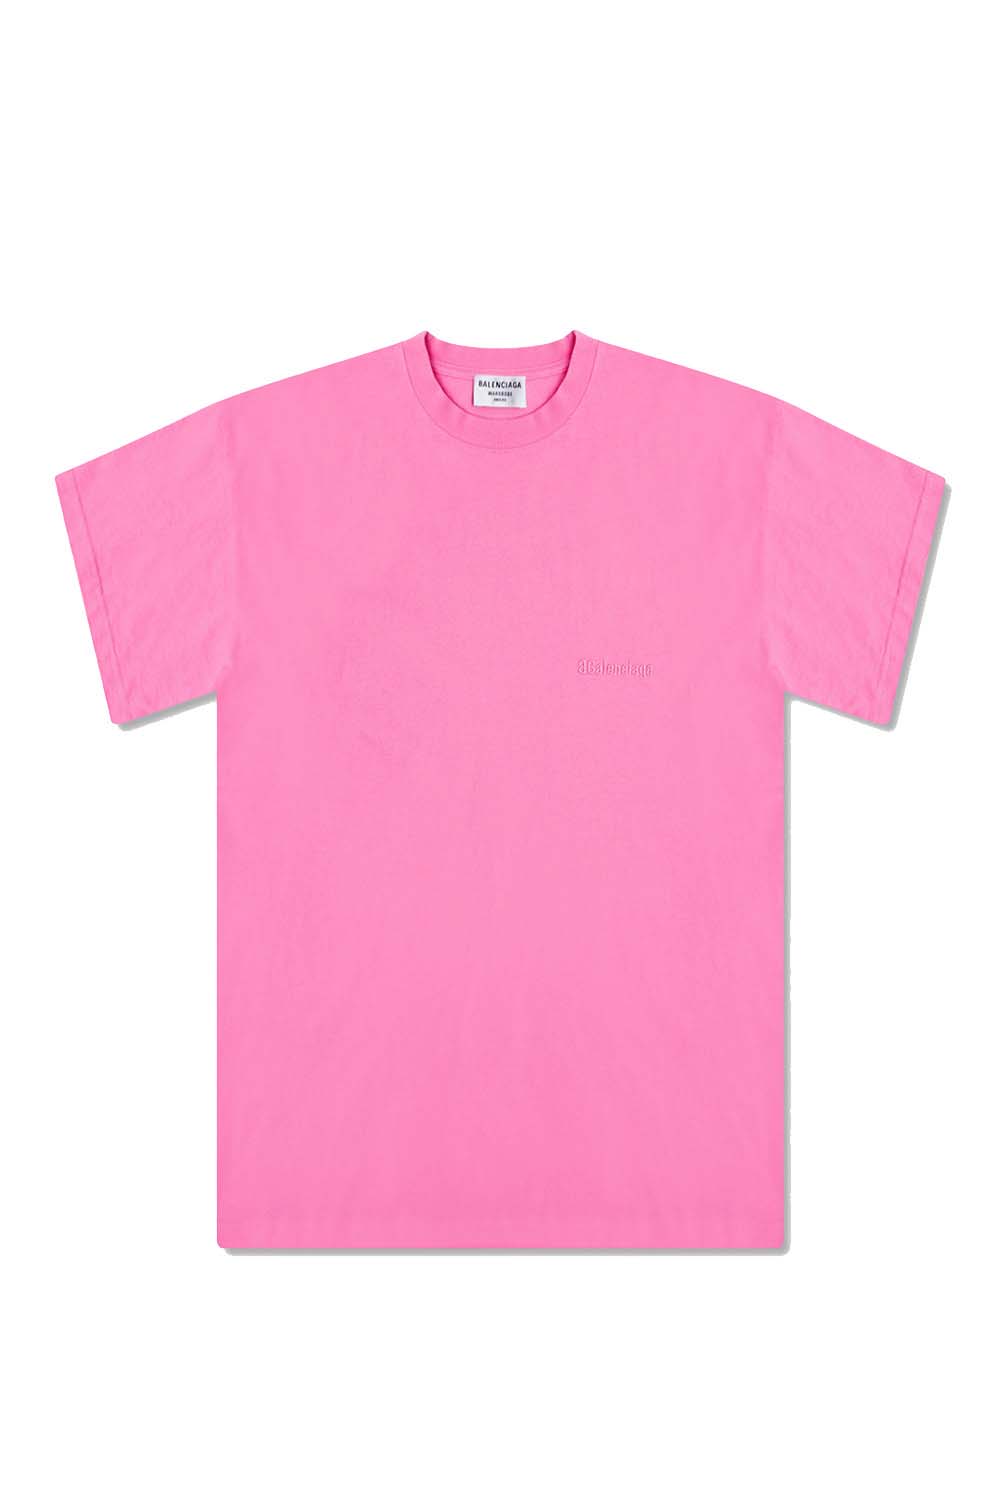 Balenciaga Logo T-Shirt Pink - US